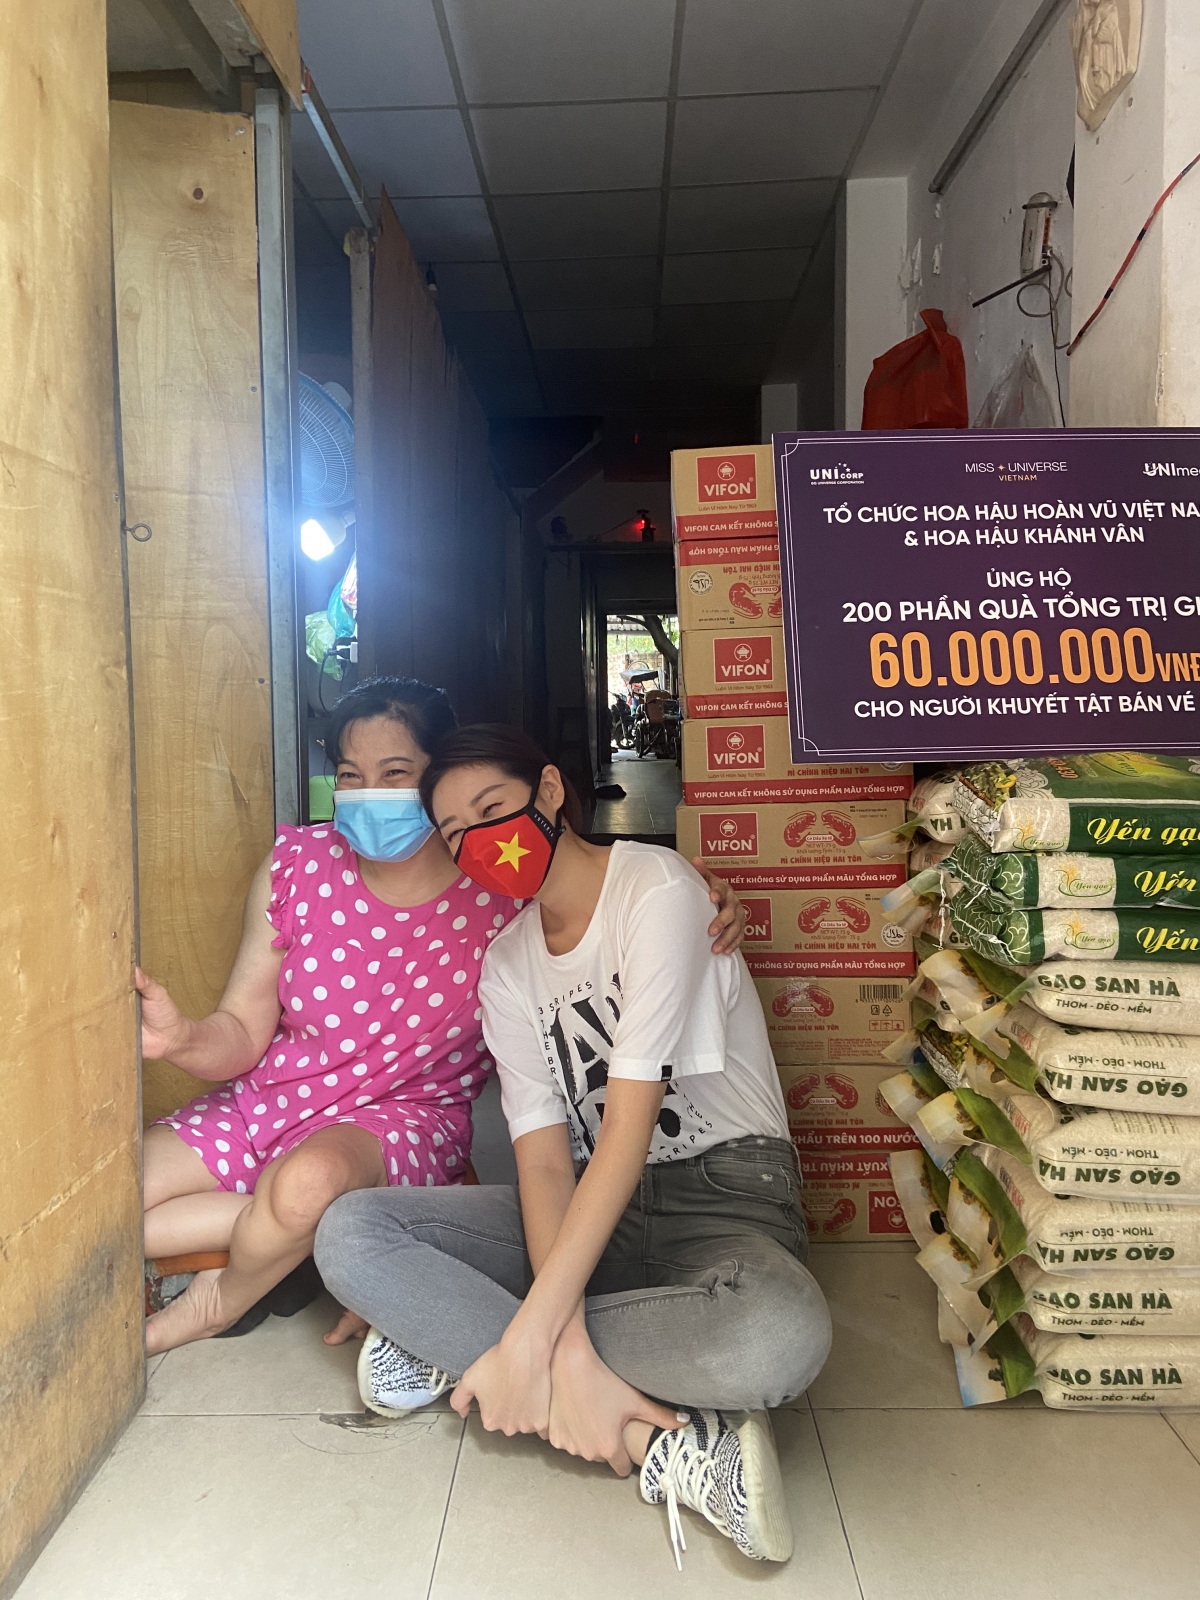 Hoa hậu Khánh Vân nhằm san sẻ khó khăn với bà con lao động nghèo bị ảnh hưởng bởi dịch Covid-19 tại TP.HCM